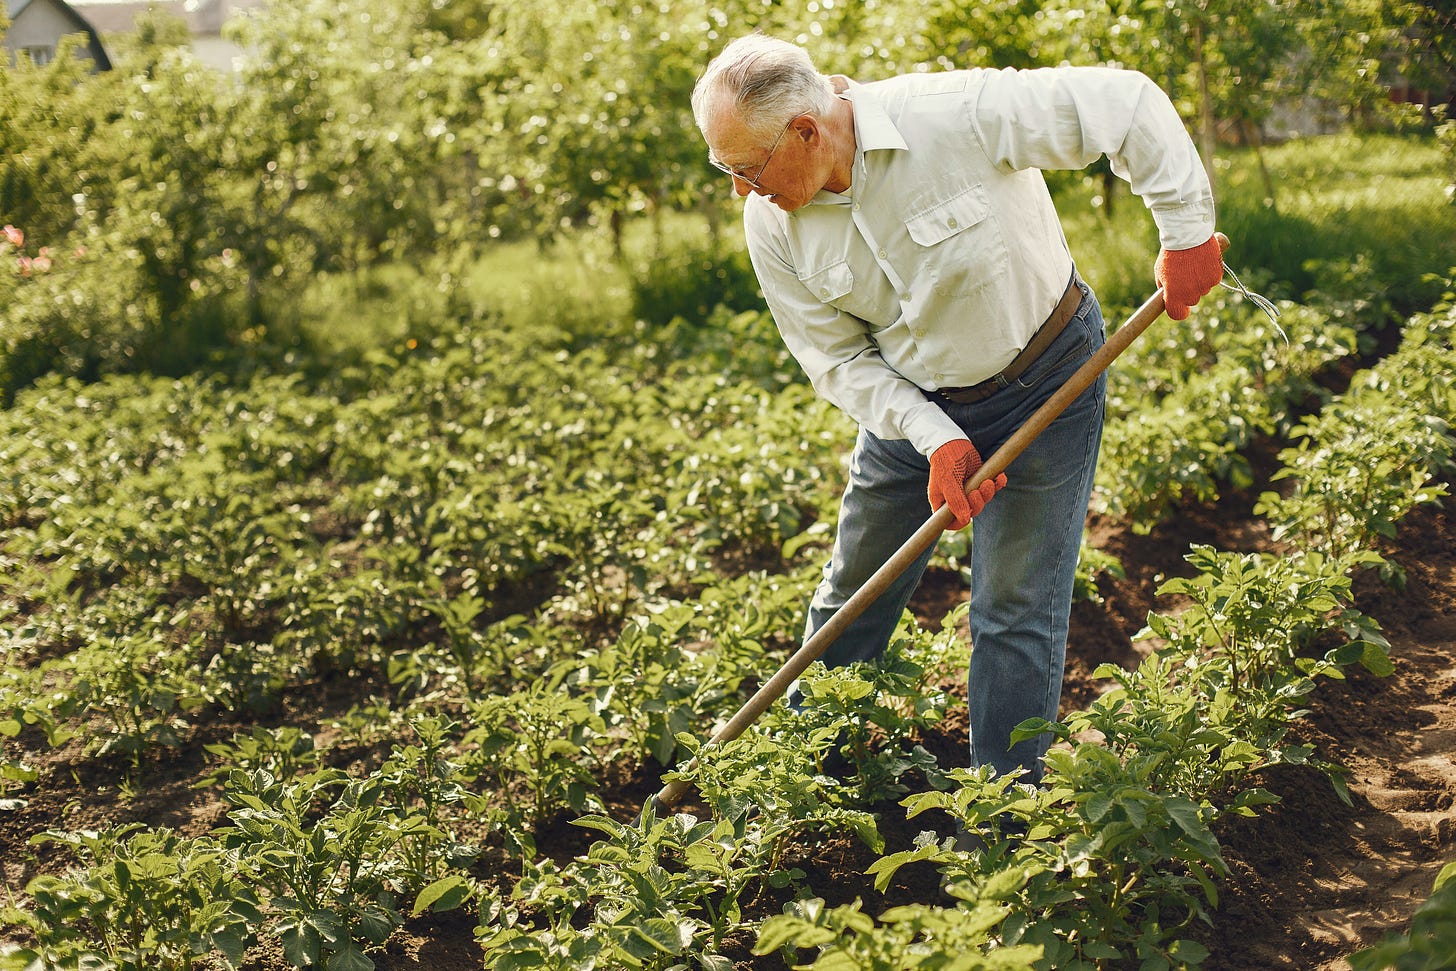 An older man working in a garden.